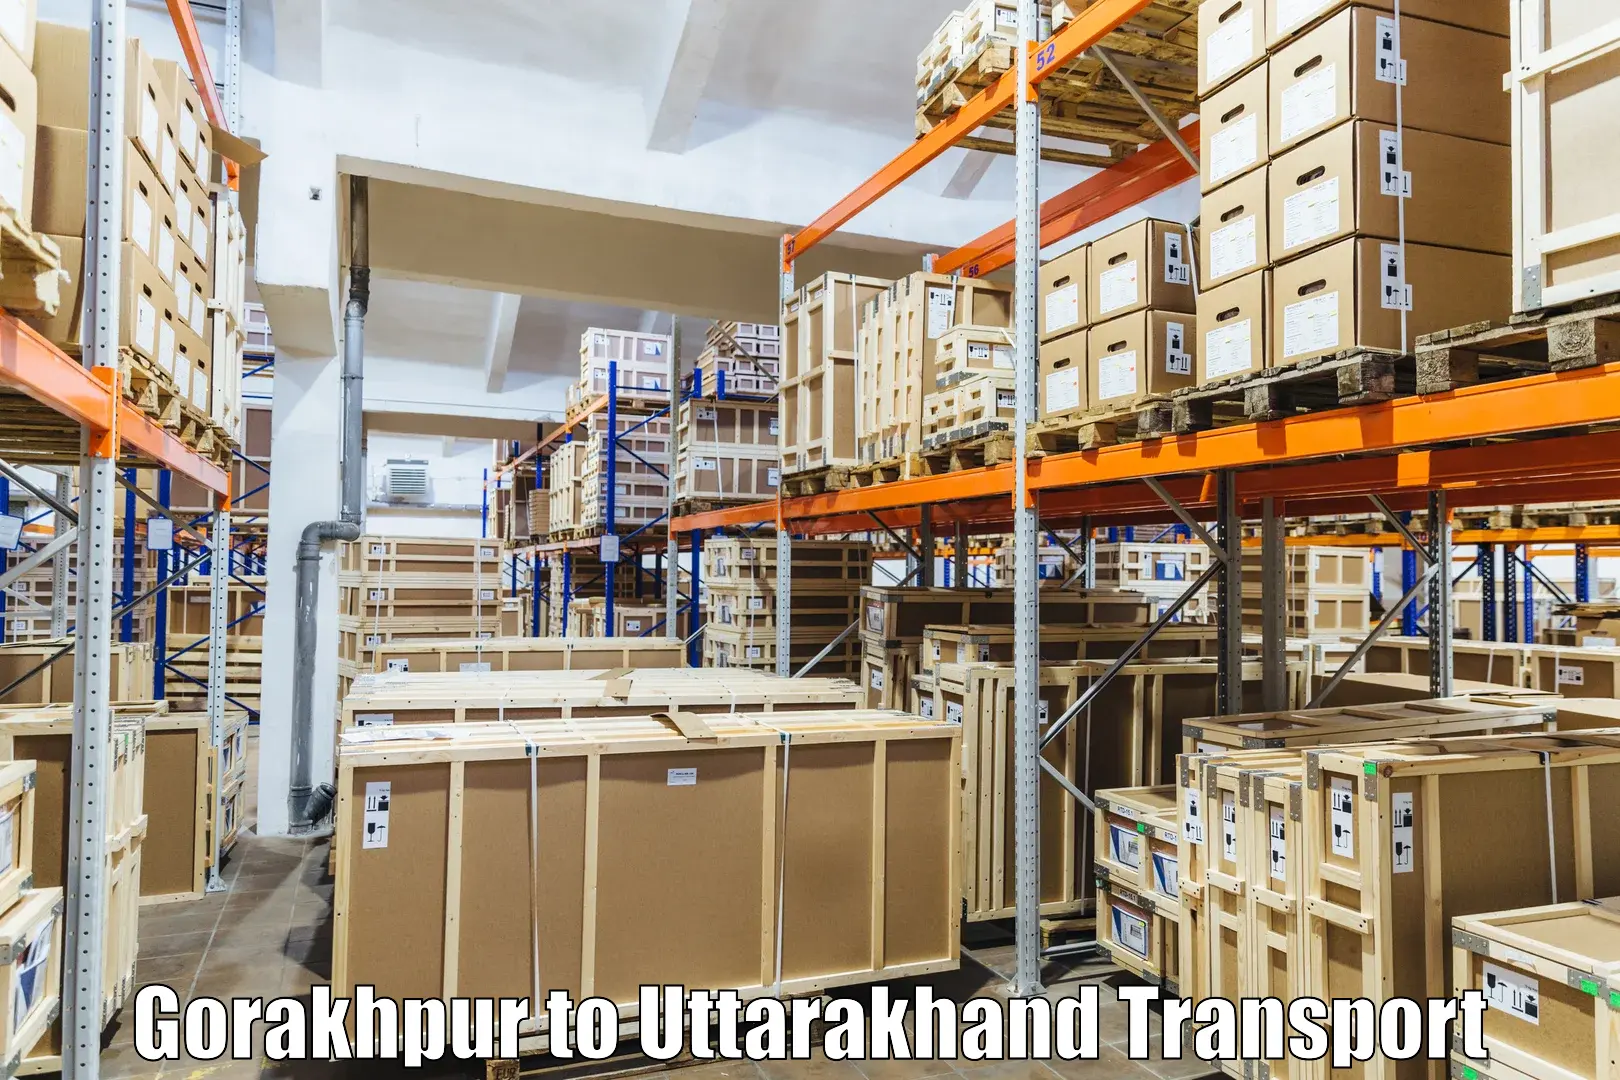 Vehicle transport services Gorakhpur to Uttarakhand